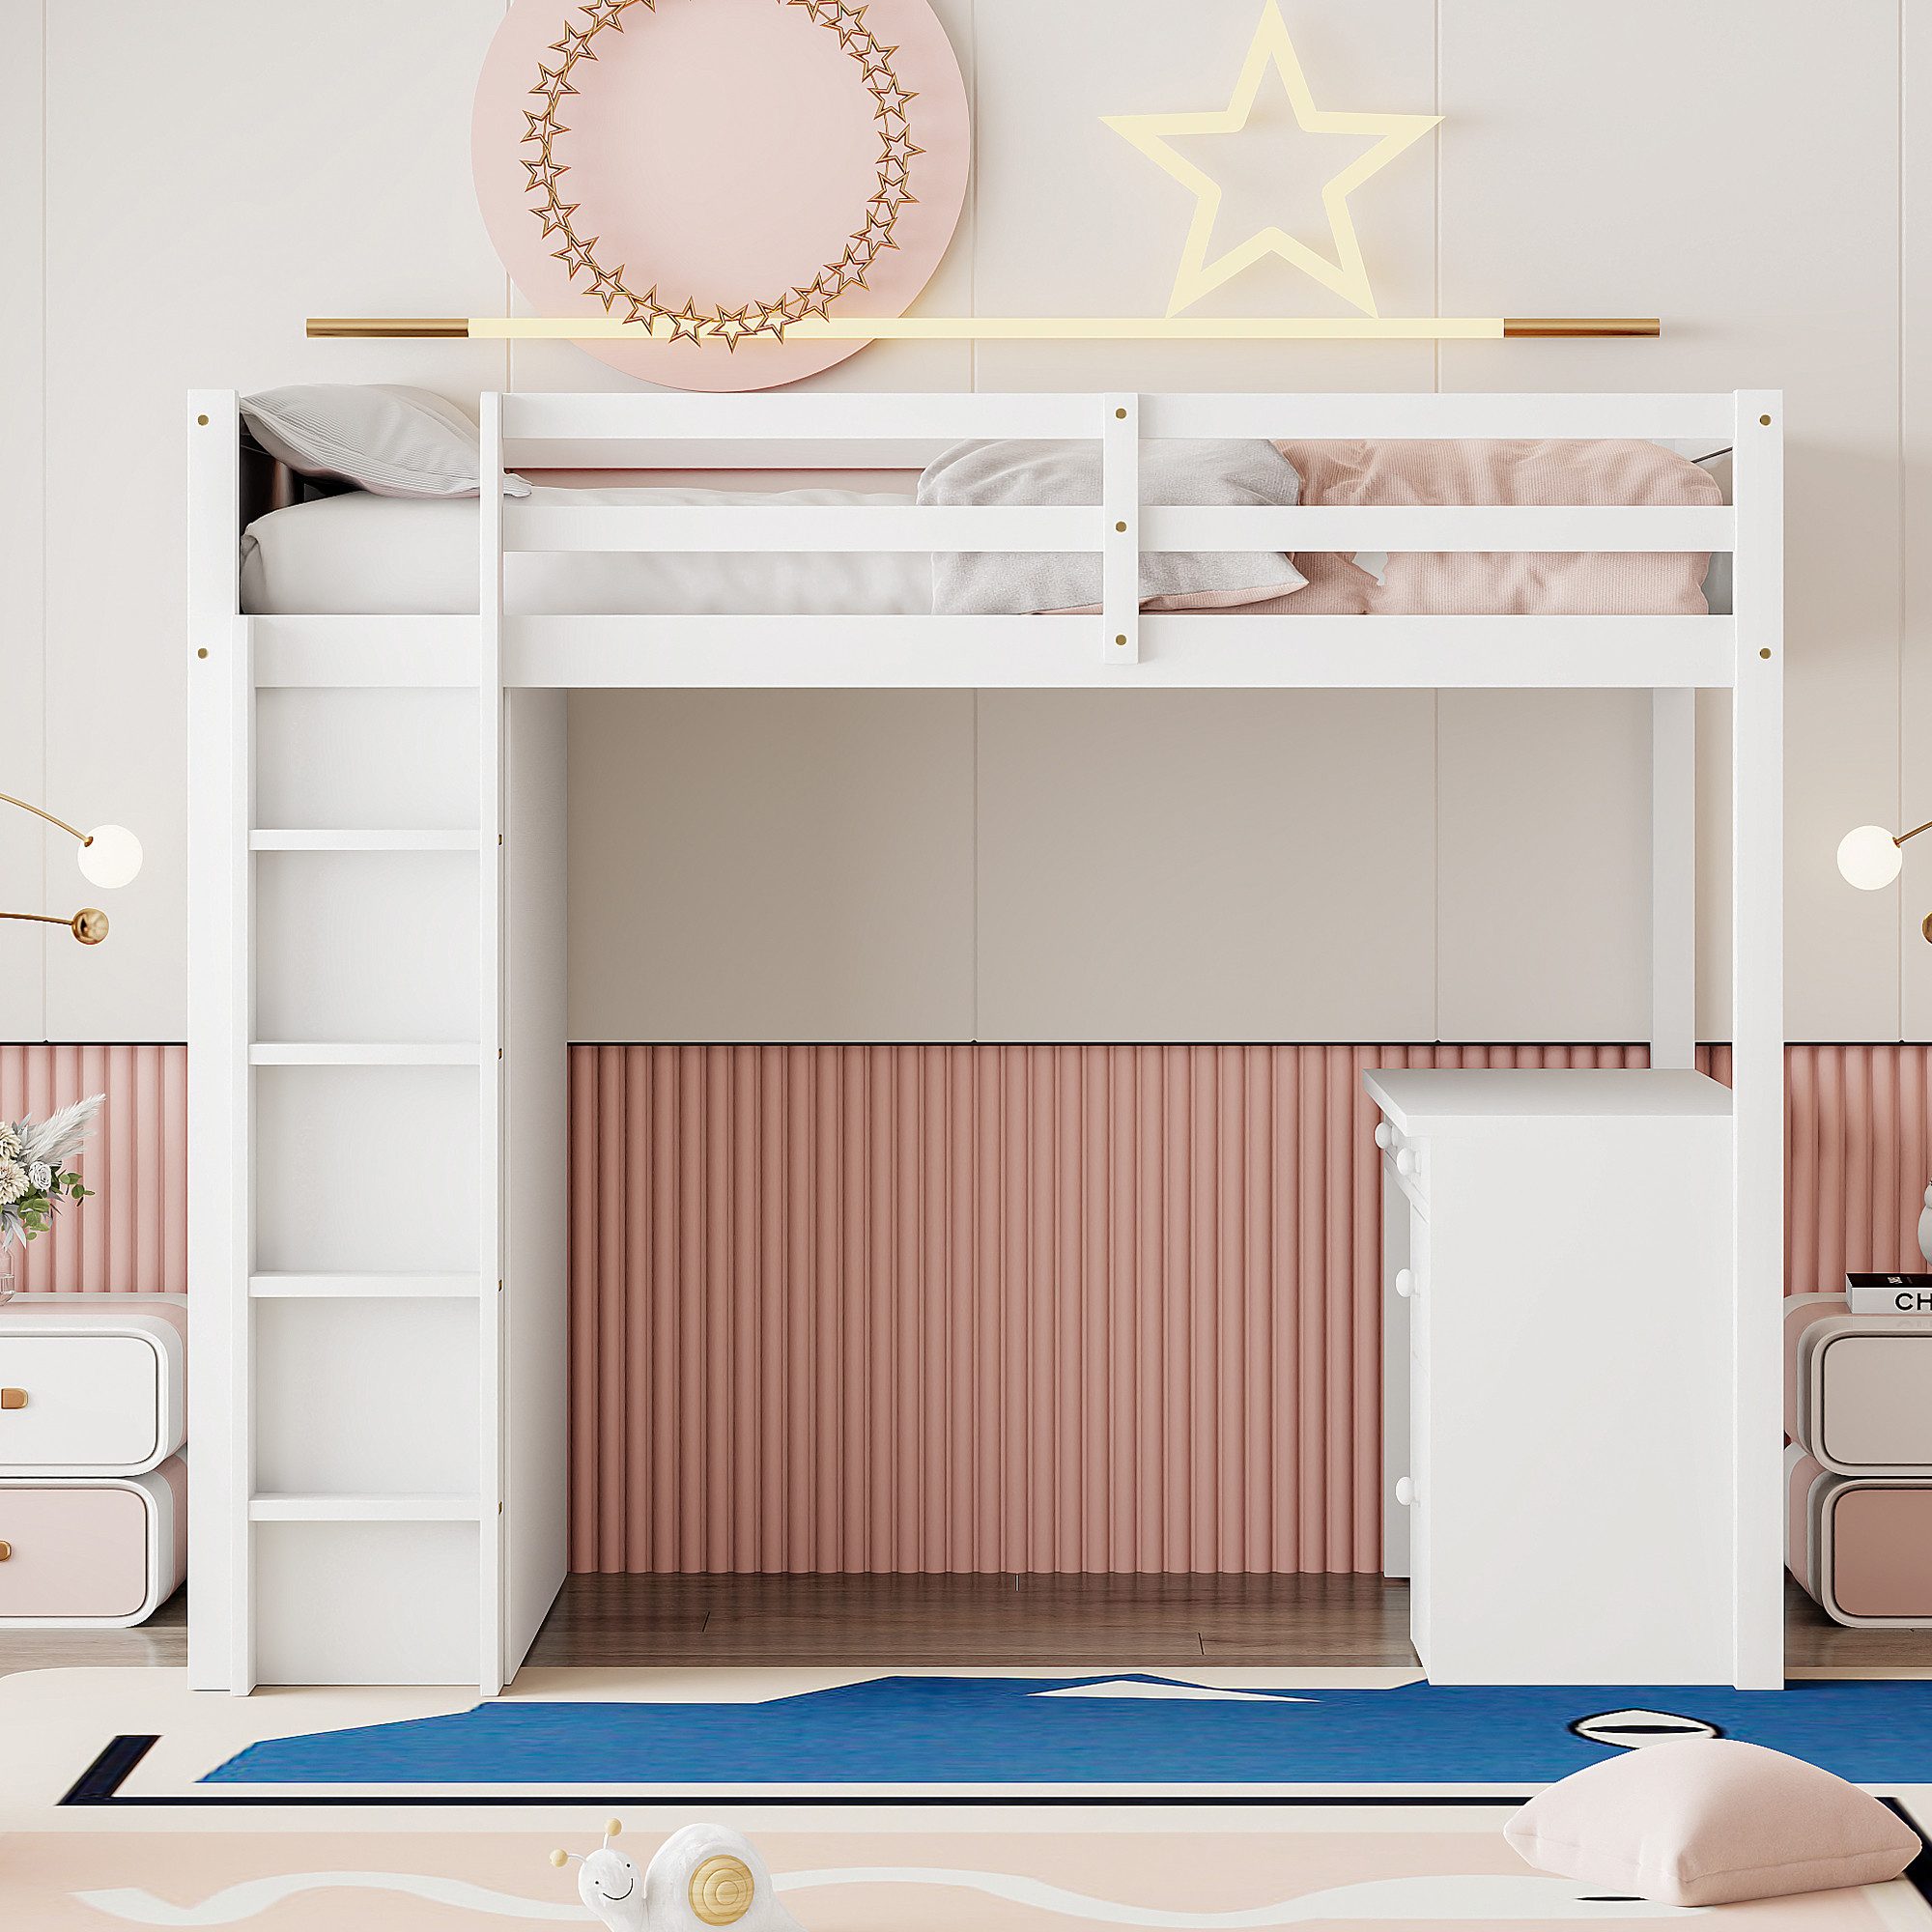 IDEASY Hochbett Hochbett mit Schreibtisch und Regalen, mit Schubladen, 90 x 200 cm, weiß/rosa, ohne Matratze und Dekoration